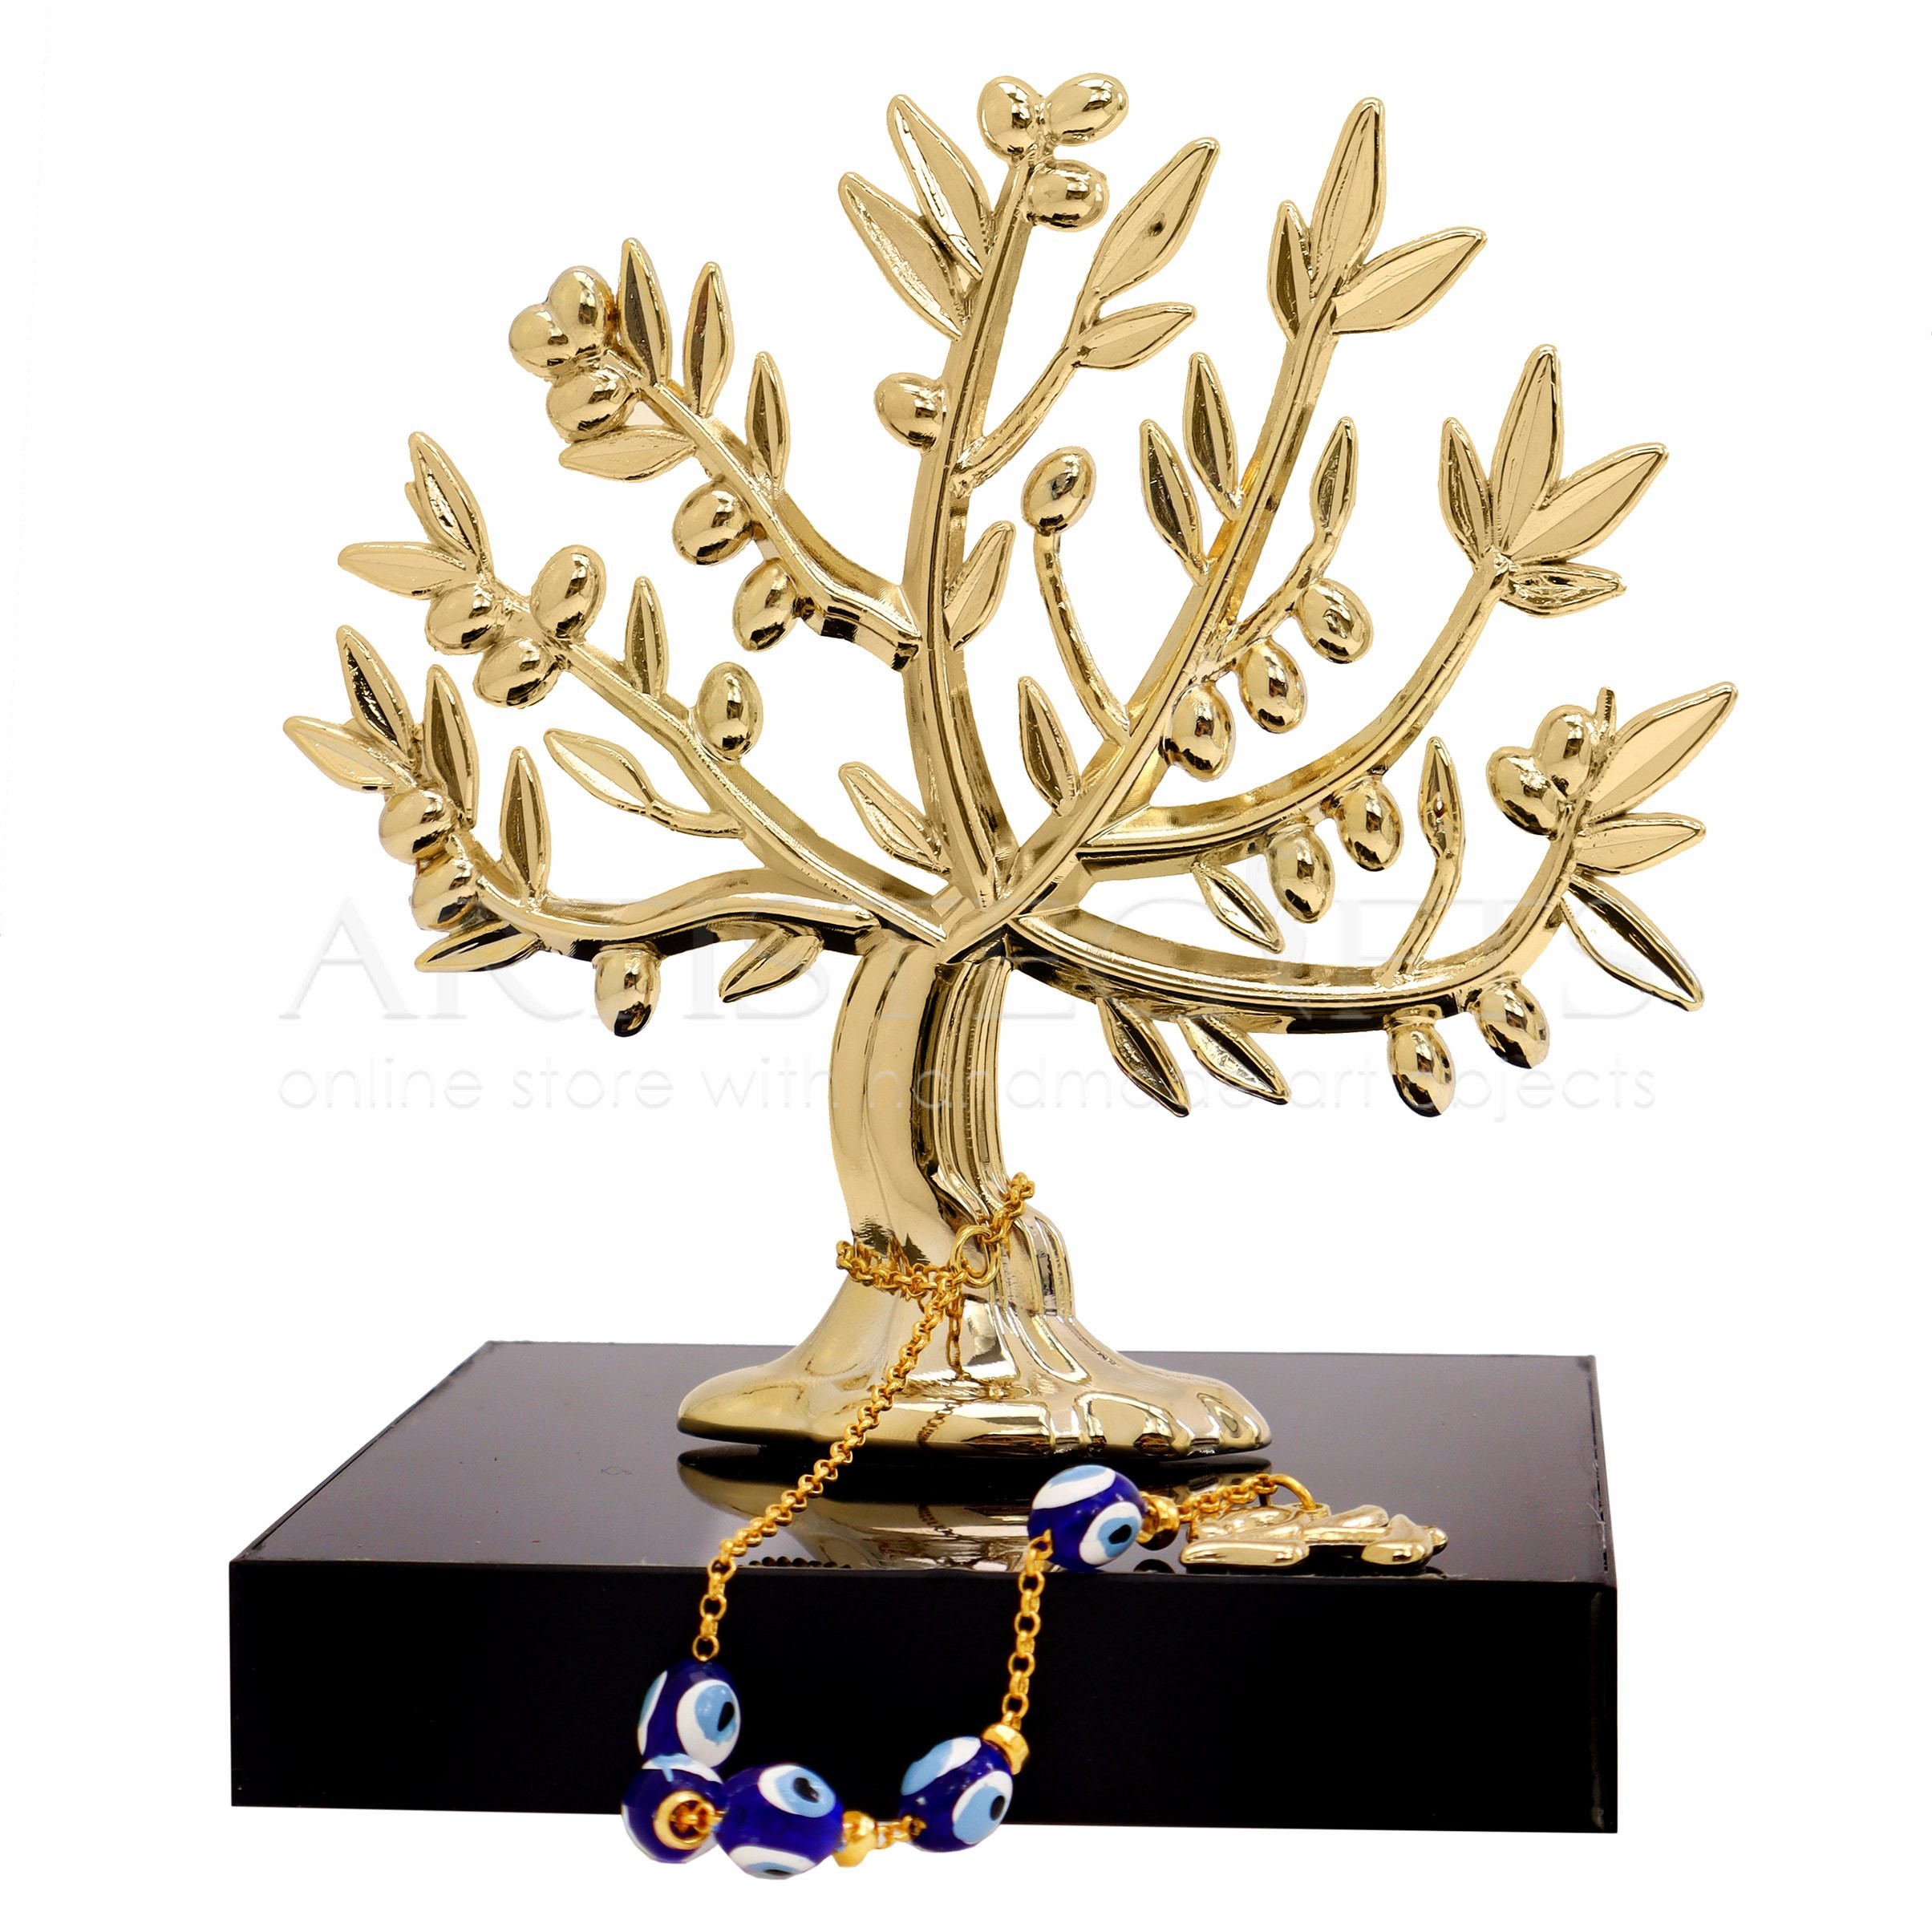 Δέντρο Ελιάς Δέντρο Ελιάς Επιχρυσωμένο, Με Μπλε Mάτια, 24 Σε Μαύρο Πλέξιγκλας, γούρια, δέντρο ελιάς, εταιρικά δώρα, βραβεία, βραβείο, δώρο για εγκαίνια, δώρο για γραφείο, δώρο για νέο σπίτι, μπλε μάτι, μπλε μάτια. γούρια για το 2023, επιχειρηματικά δώρα, εταιρικά δώρα, δώρα για μωρό